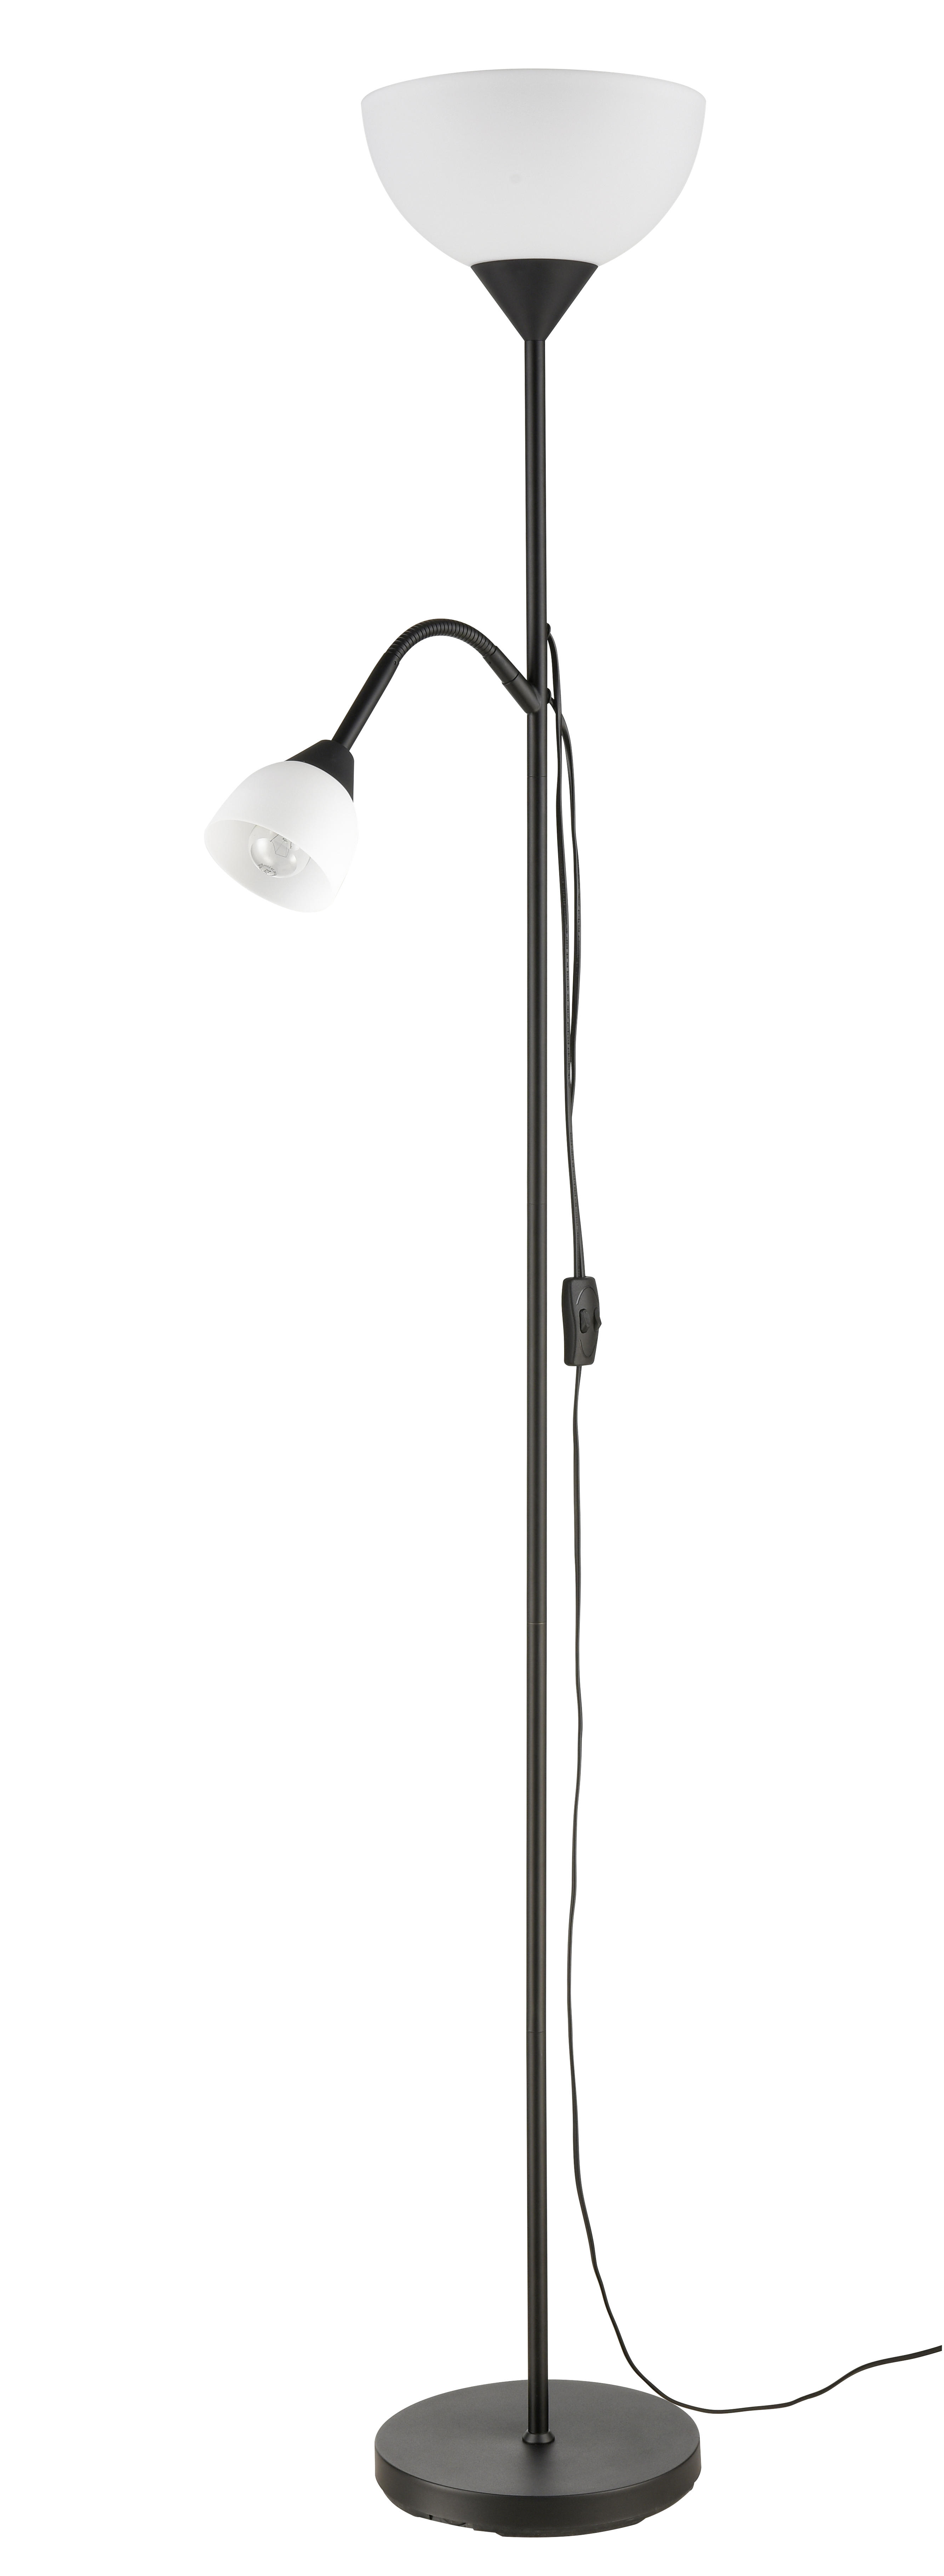 STOJACIA LAMPA, 25/180 cm  - čierna, Konventionell, kov/plast (25/180cm) - Boxxx